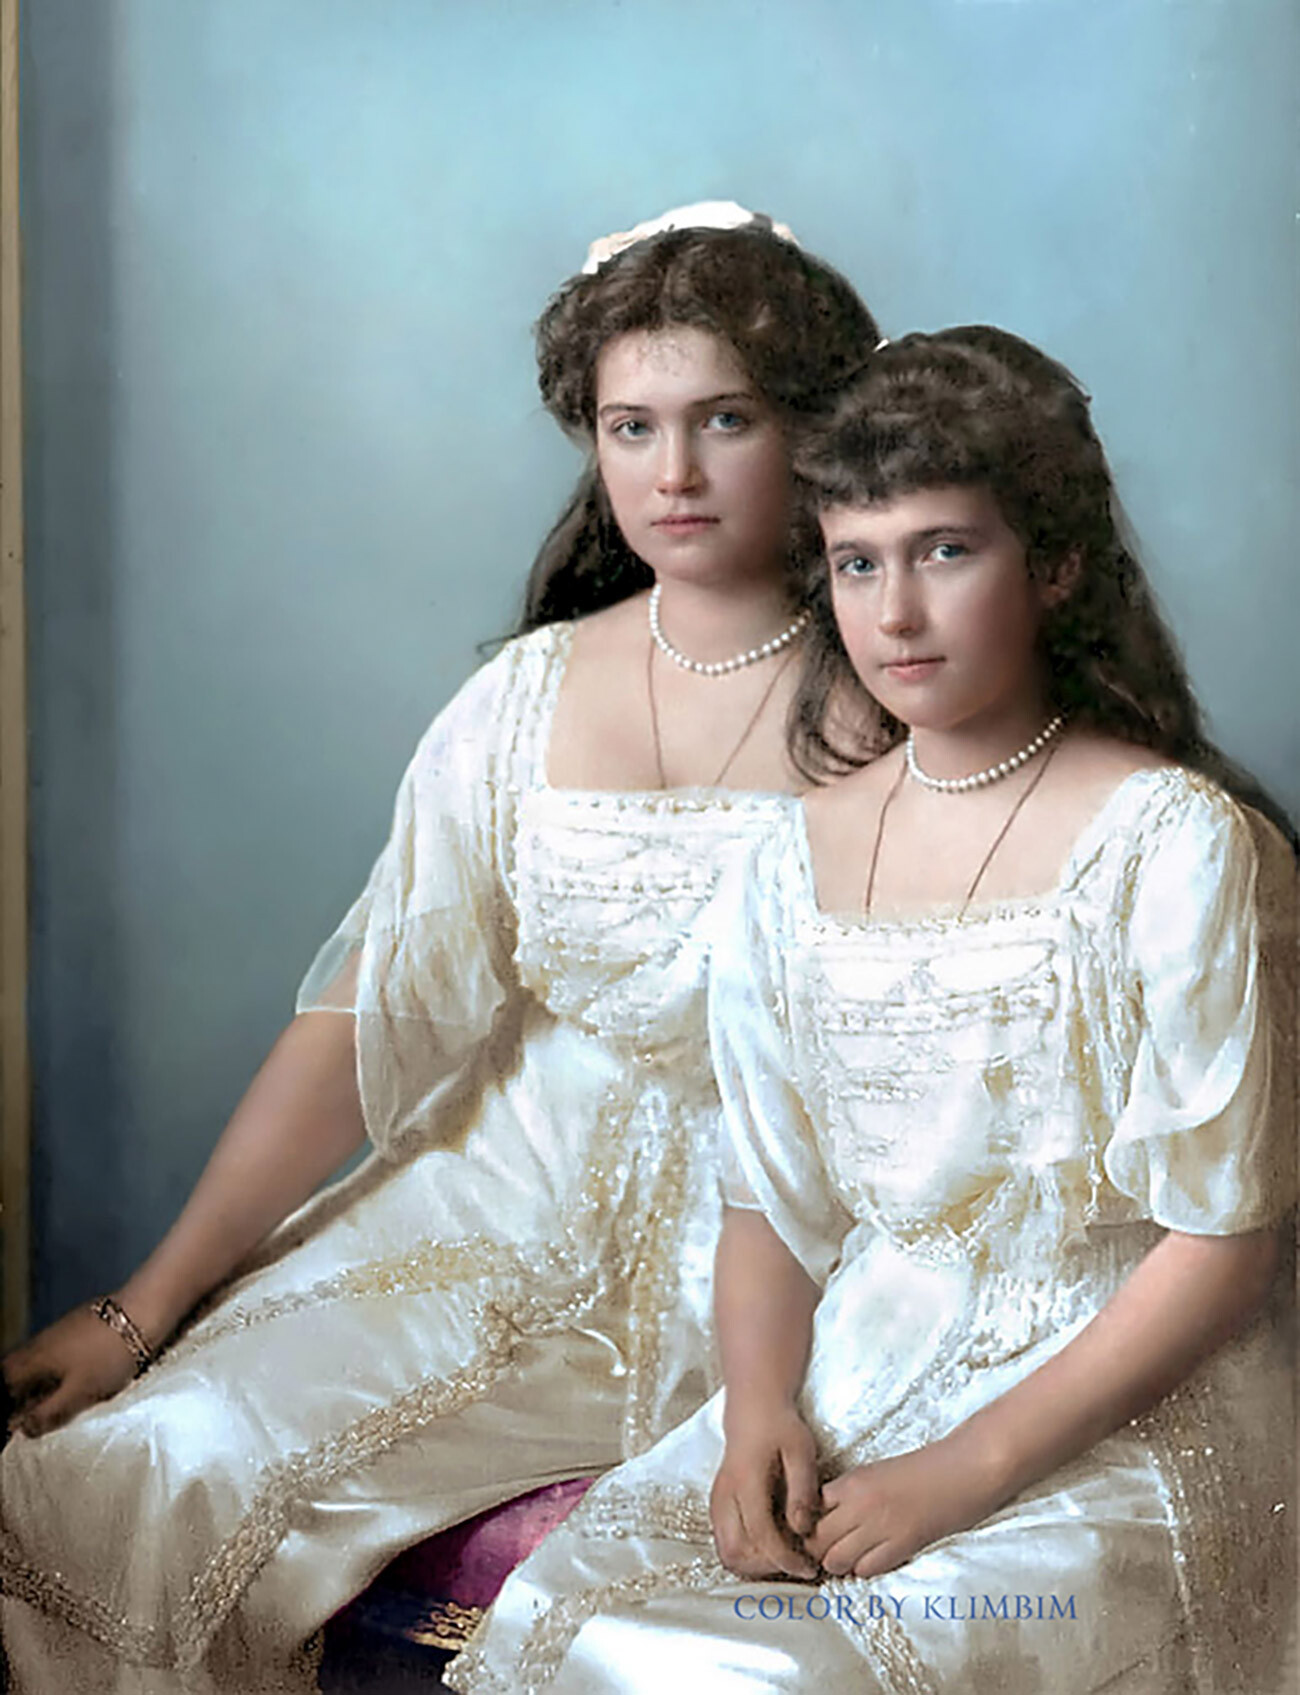 Marija e Anastasija (a destra)

